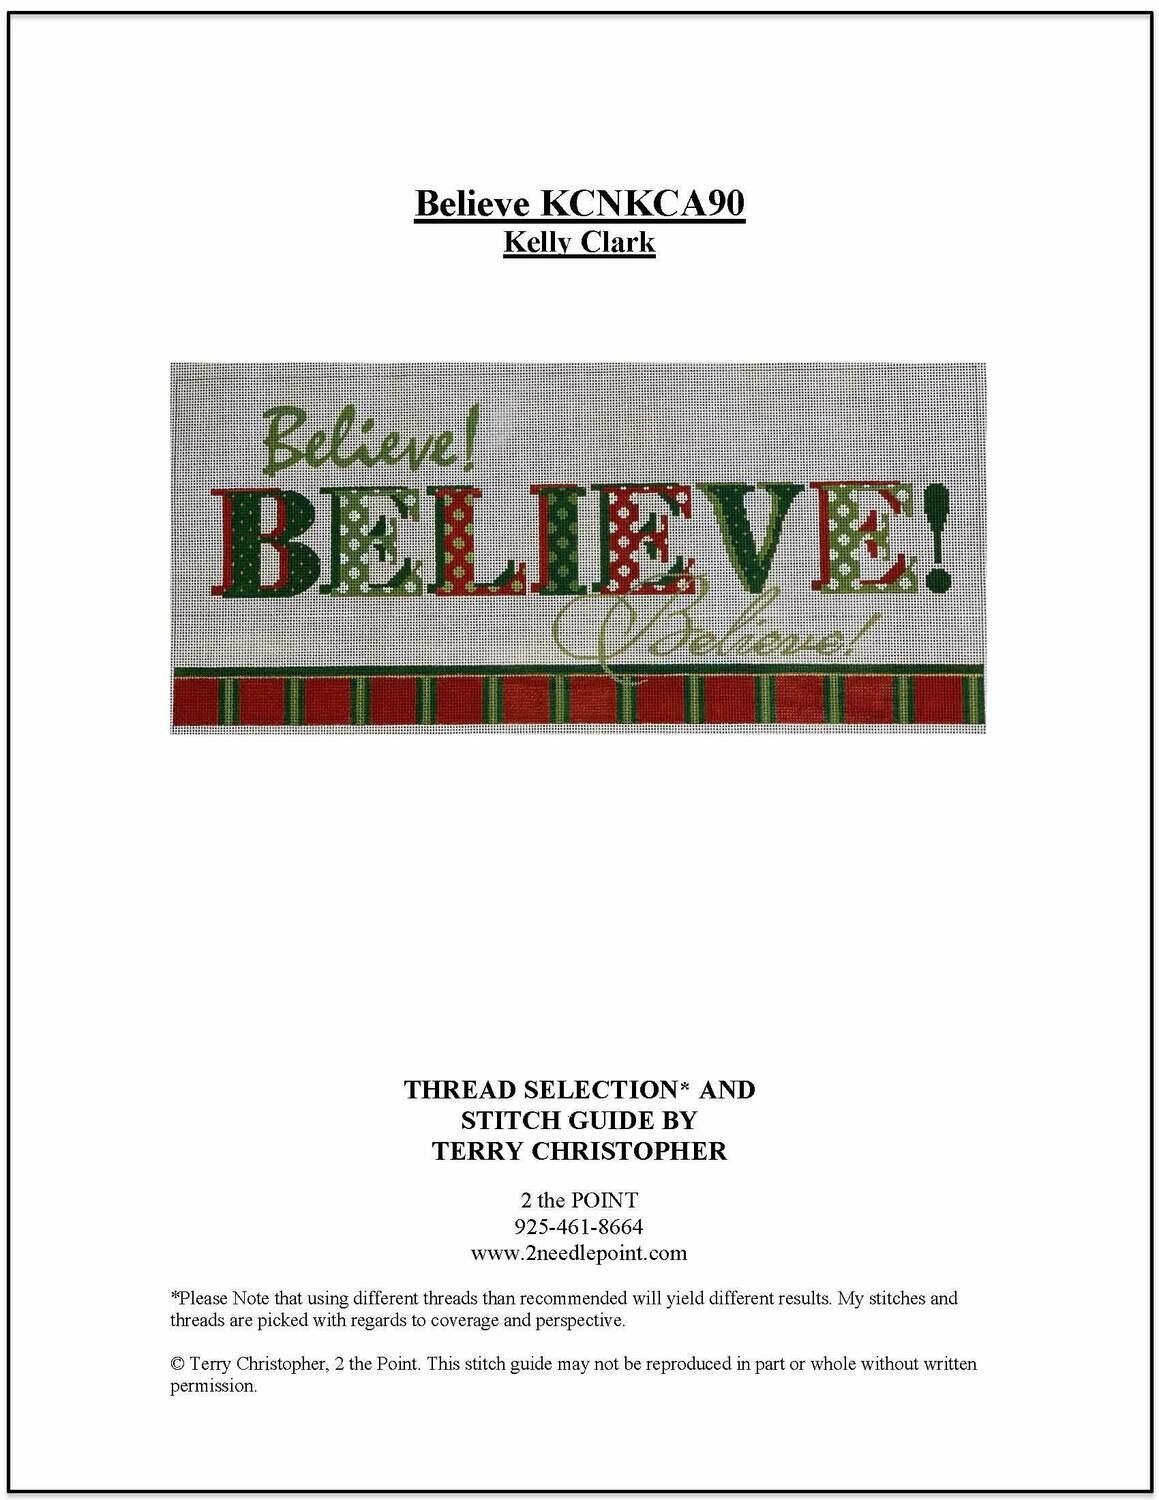 Kelly Clark, Believe KCNKCA90